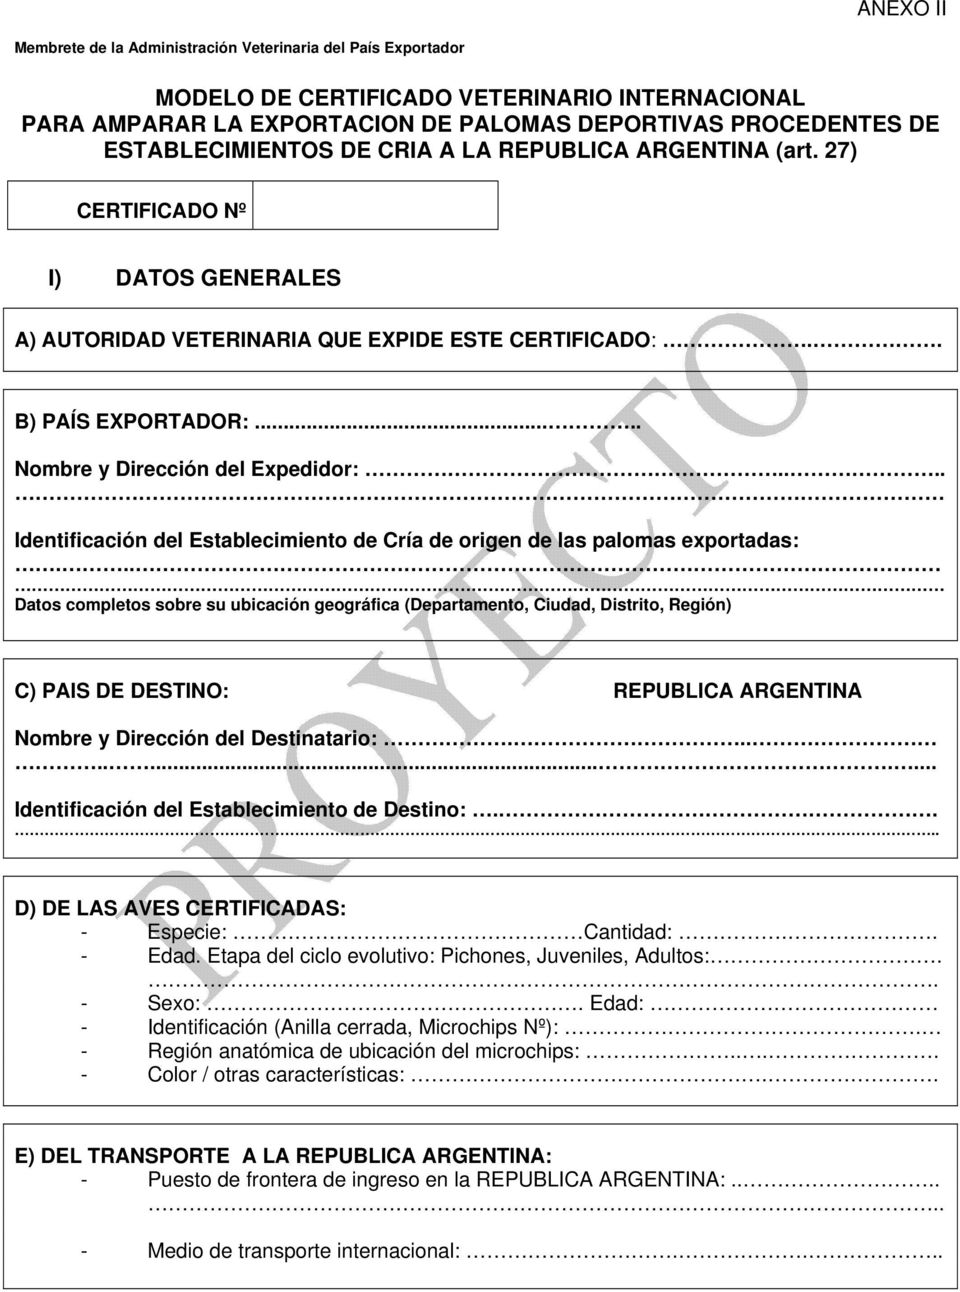 .... Nombre y Dirección del Expedidor:.... Identificación del Establecimiento de Cría de origen de las palomas exportadas:.